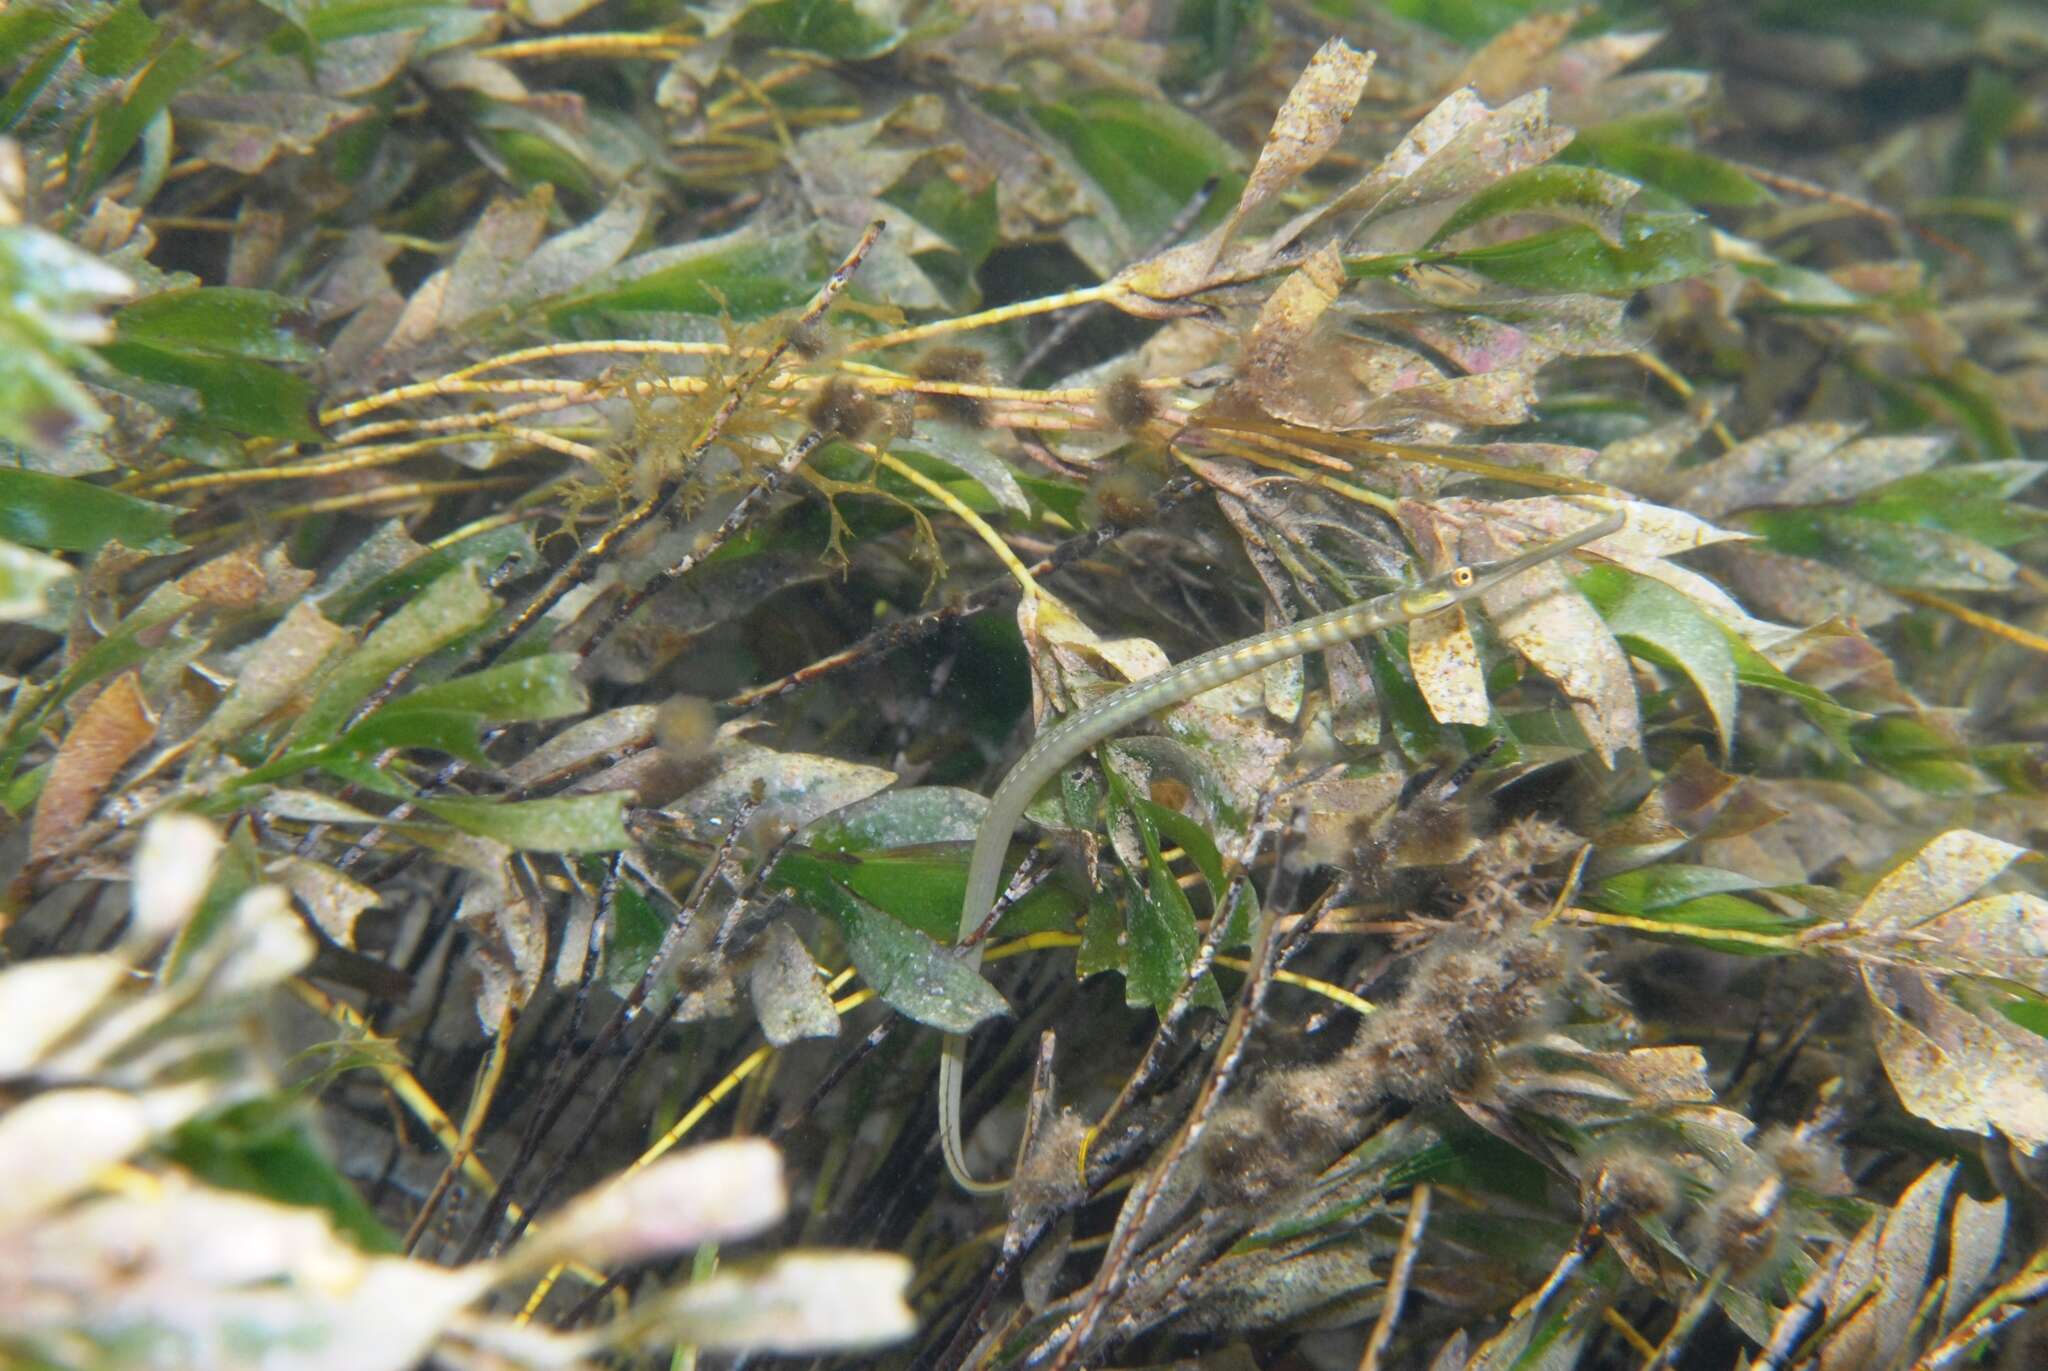 Image of Gulf pipefish